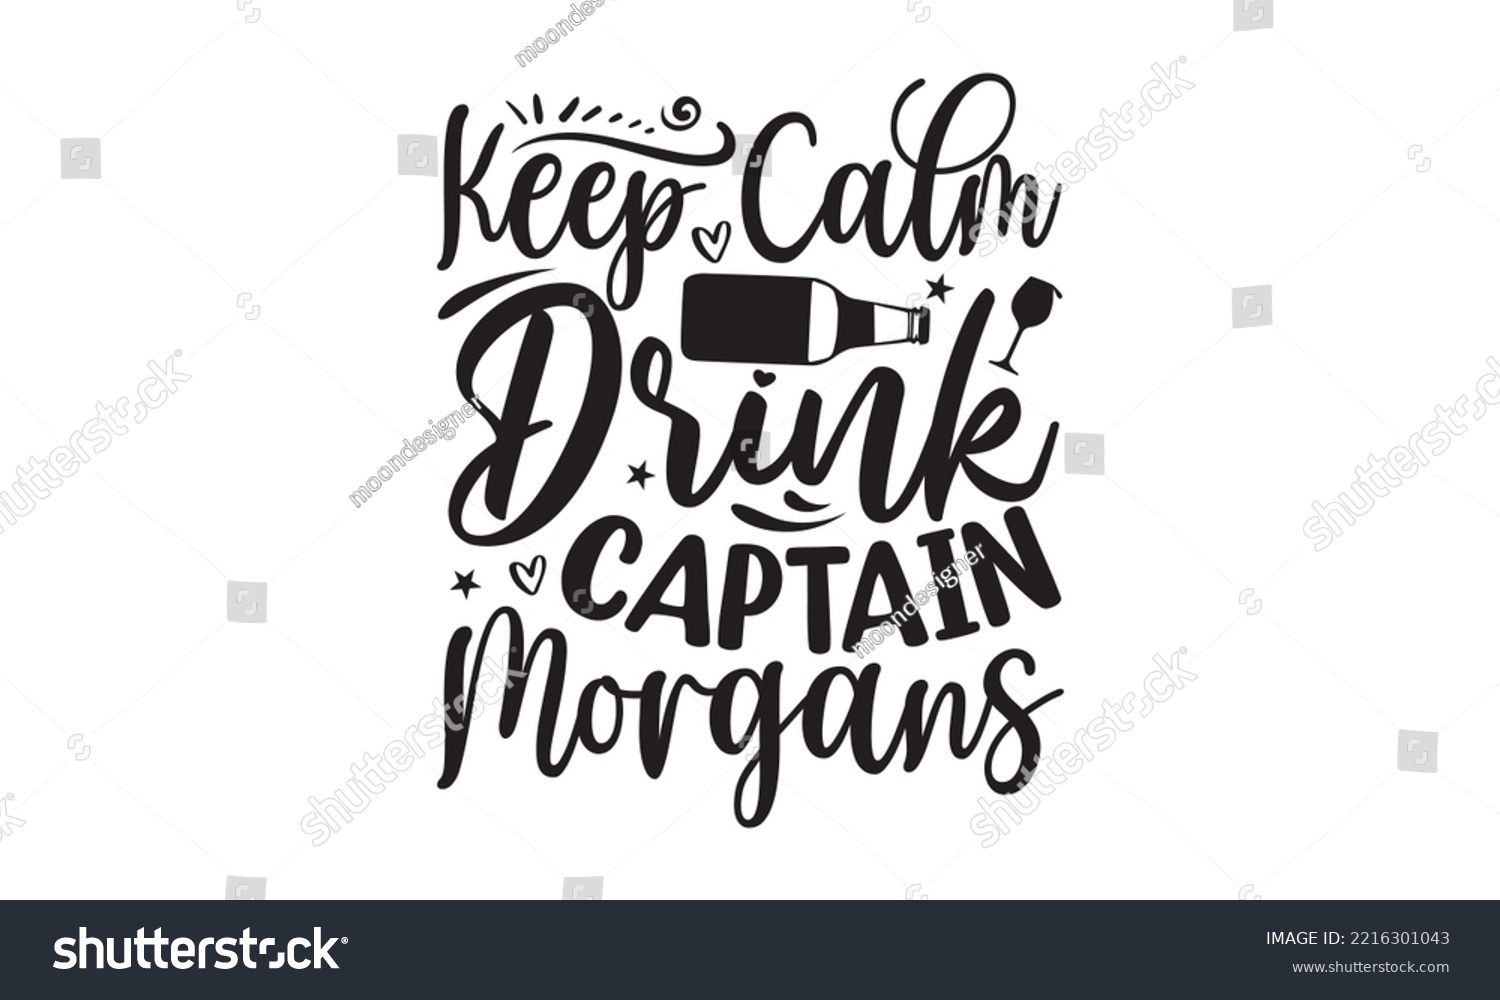 SVG of Keep calm drink captain morgans - Alcohol SVG T Shirt design, Girl Beer Design, Prost, Pretzels and Beer, Vector EPS Editable Files, Alcohol funny quotes, Oktoberfest Alcohol SVG design,  EPS 10 svg